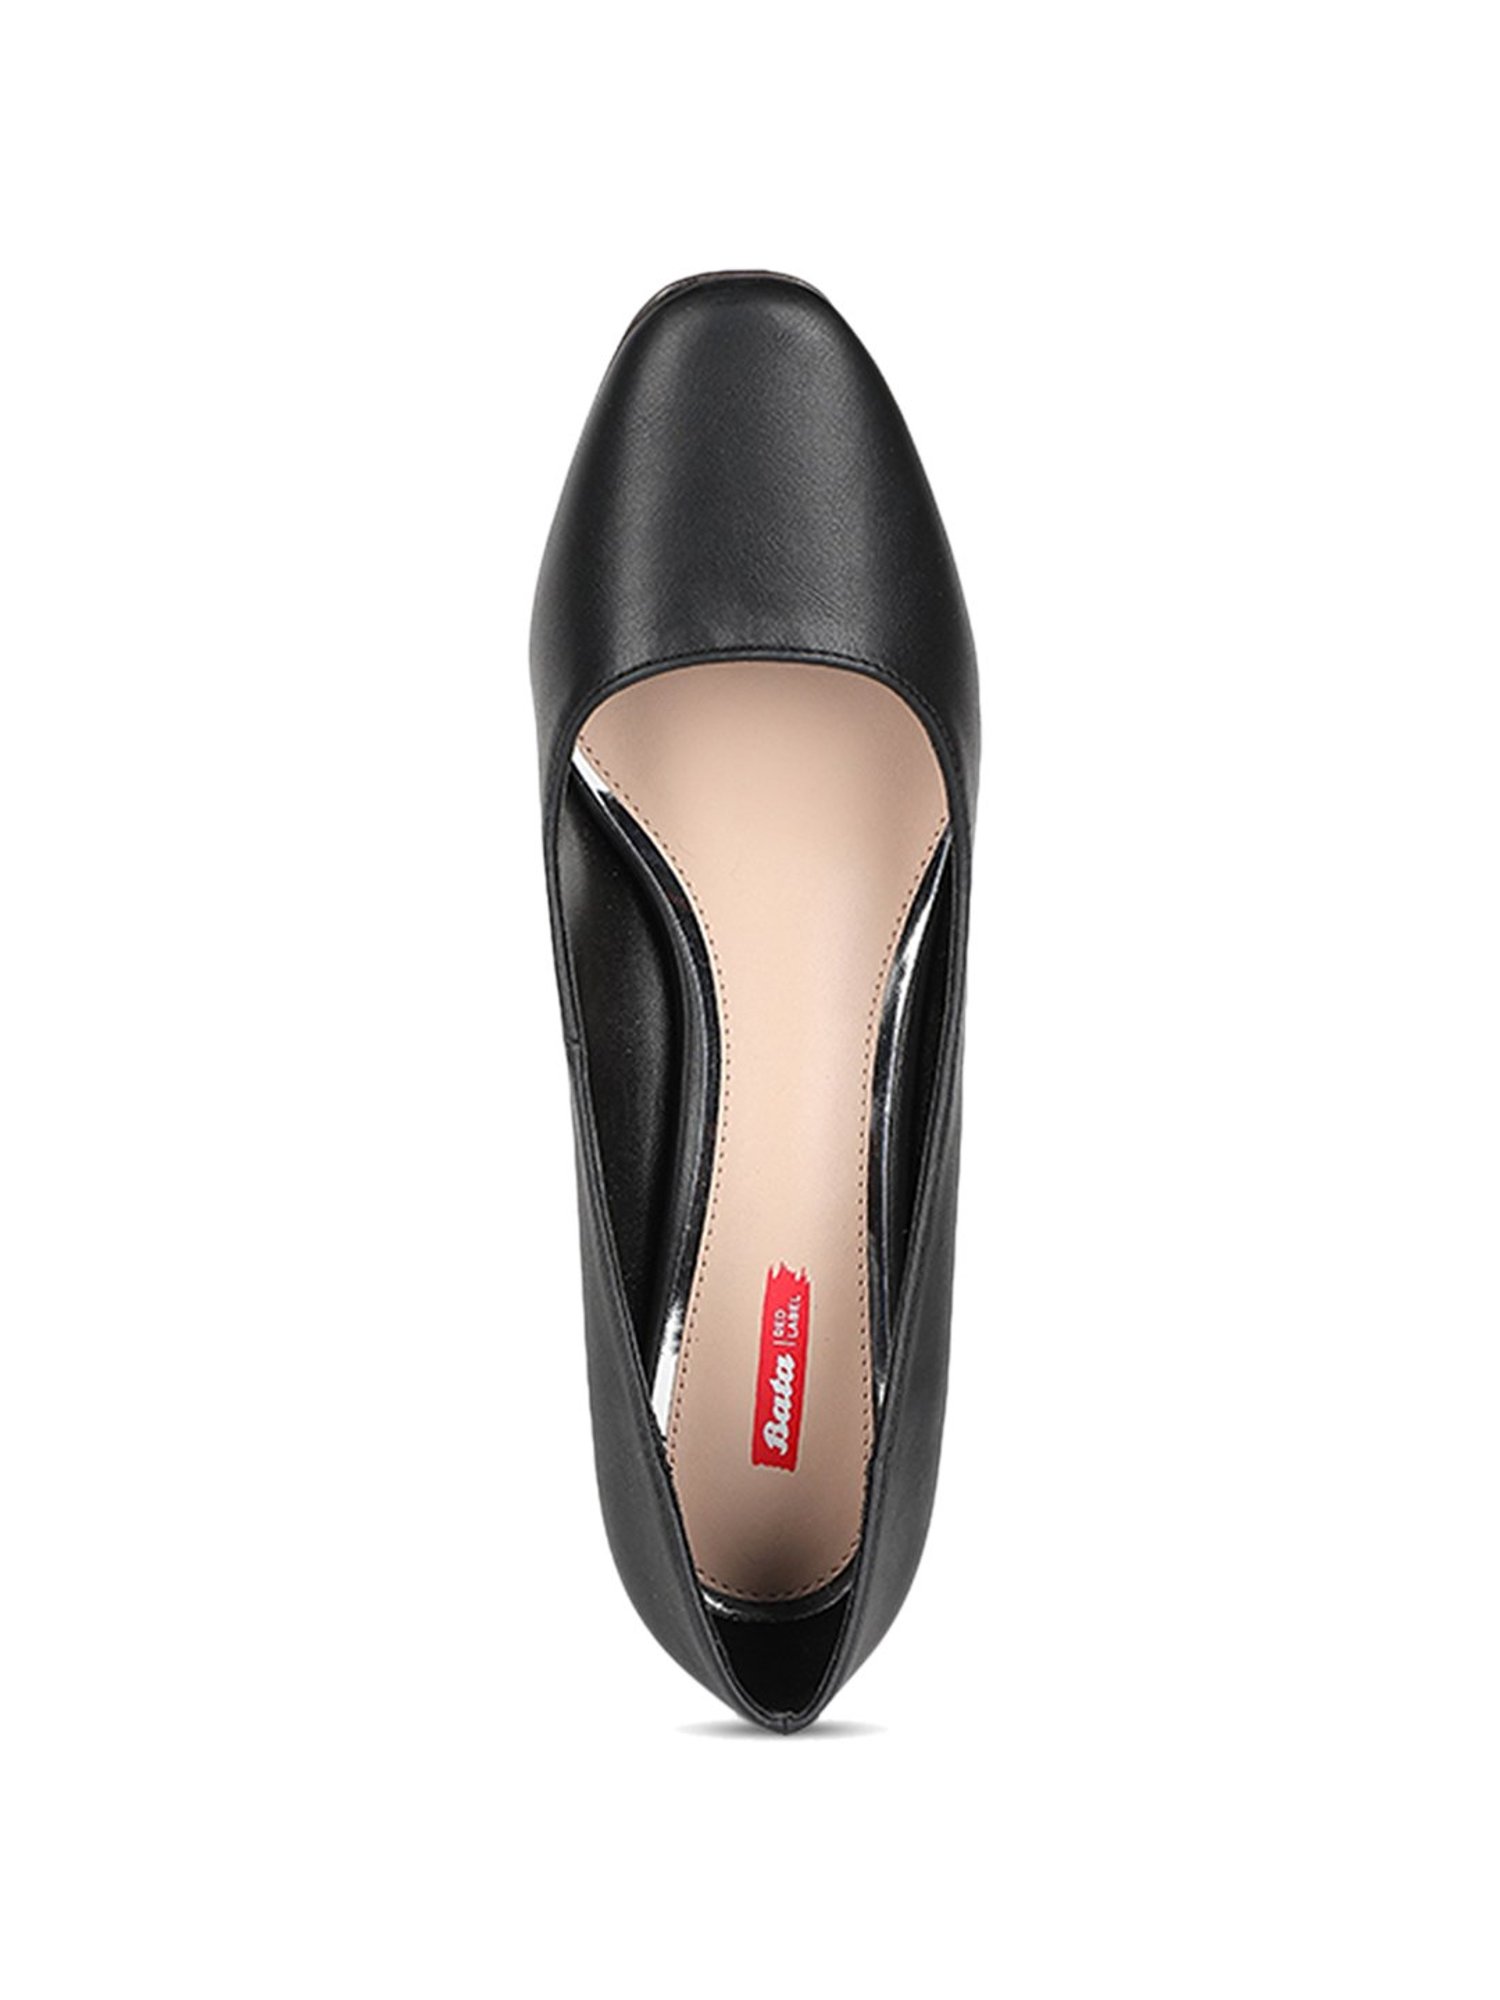 Buy Bata Beige Heels For Women [7] Online - Best Price Bata Beige Heels For  Women [7] - Justdial Shop Online.